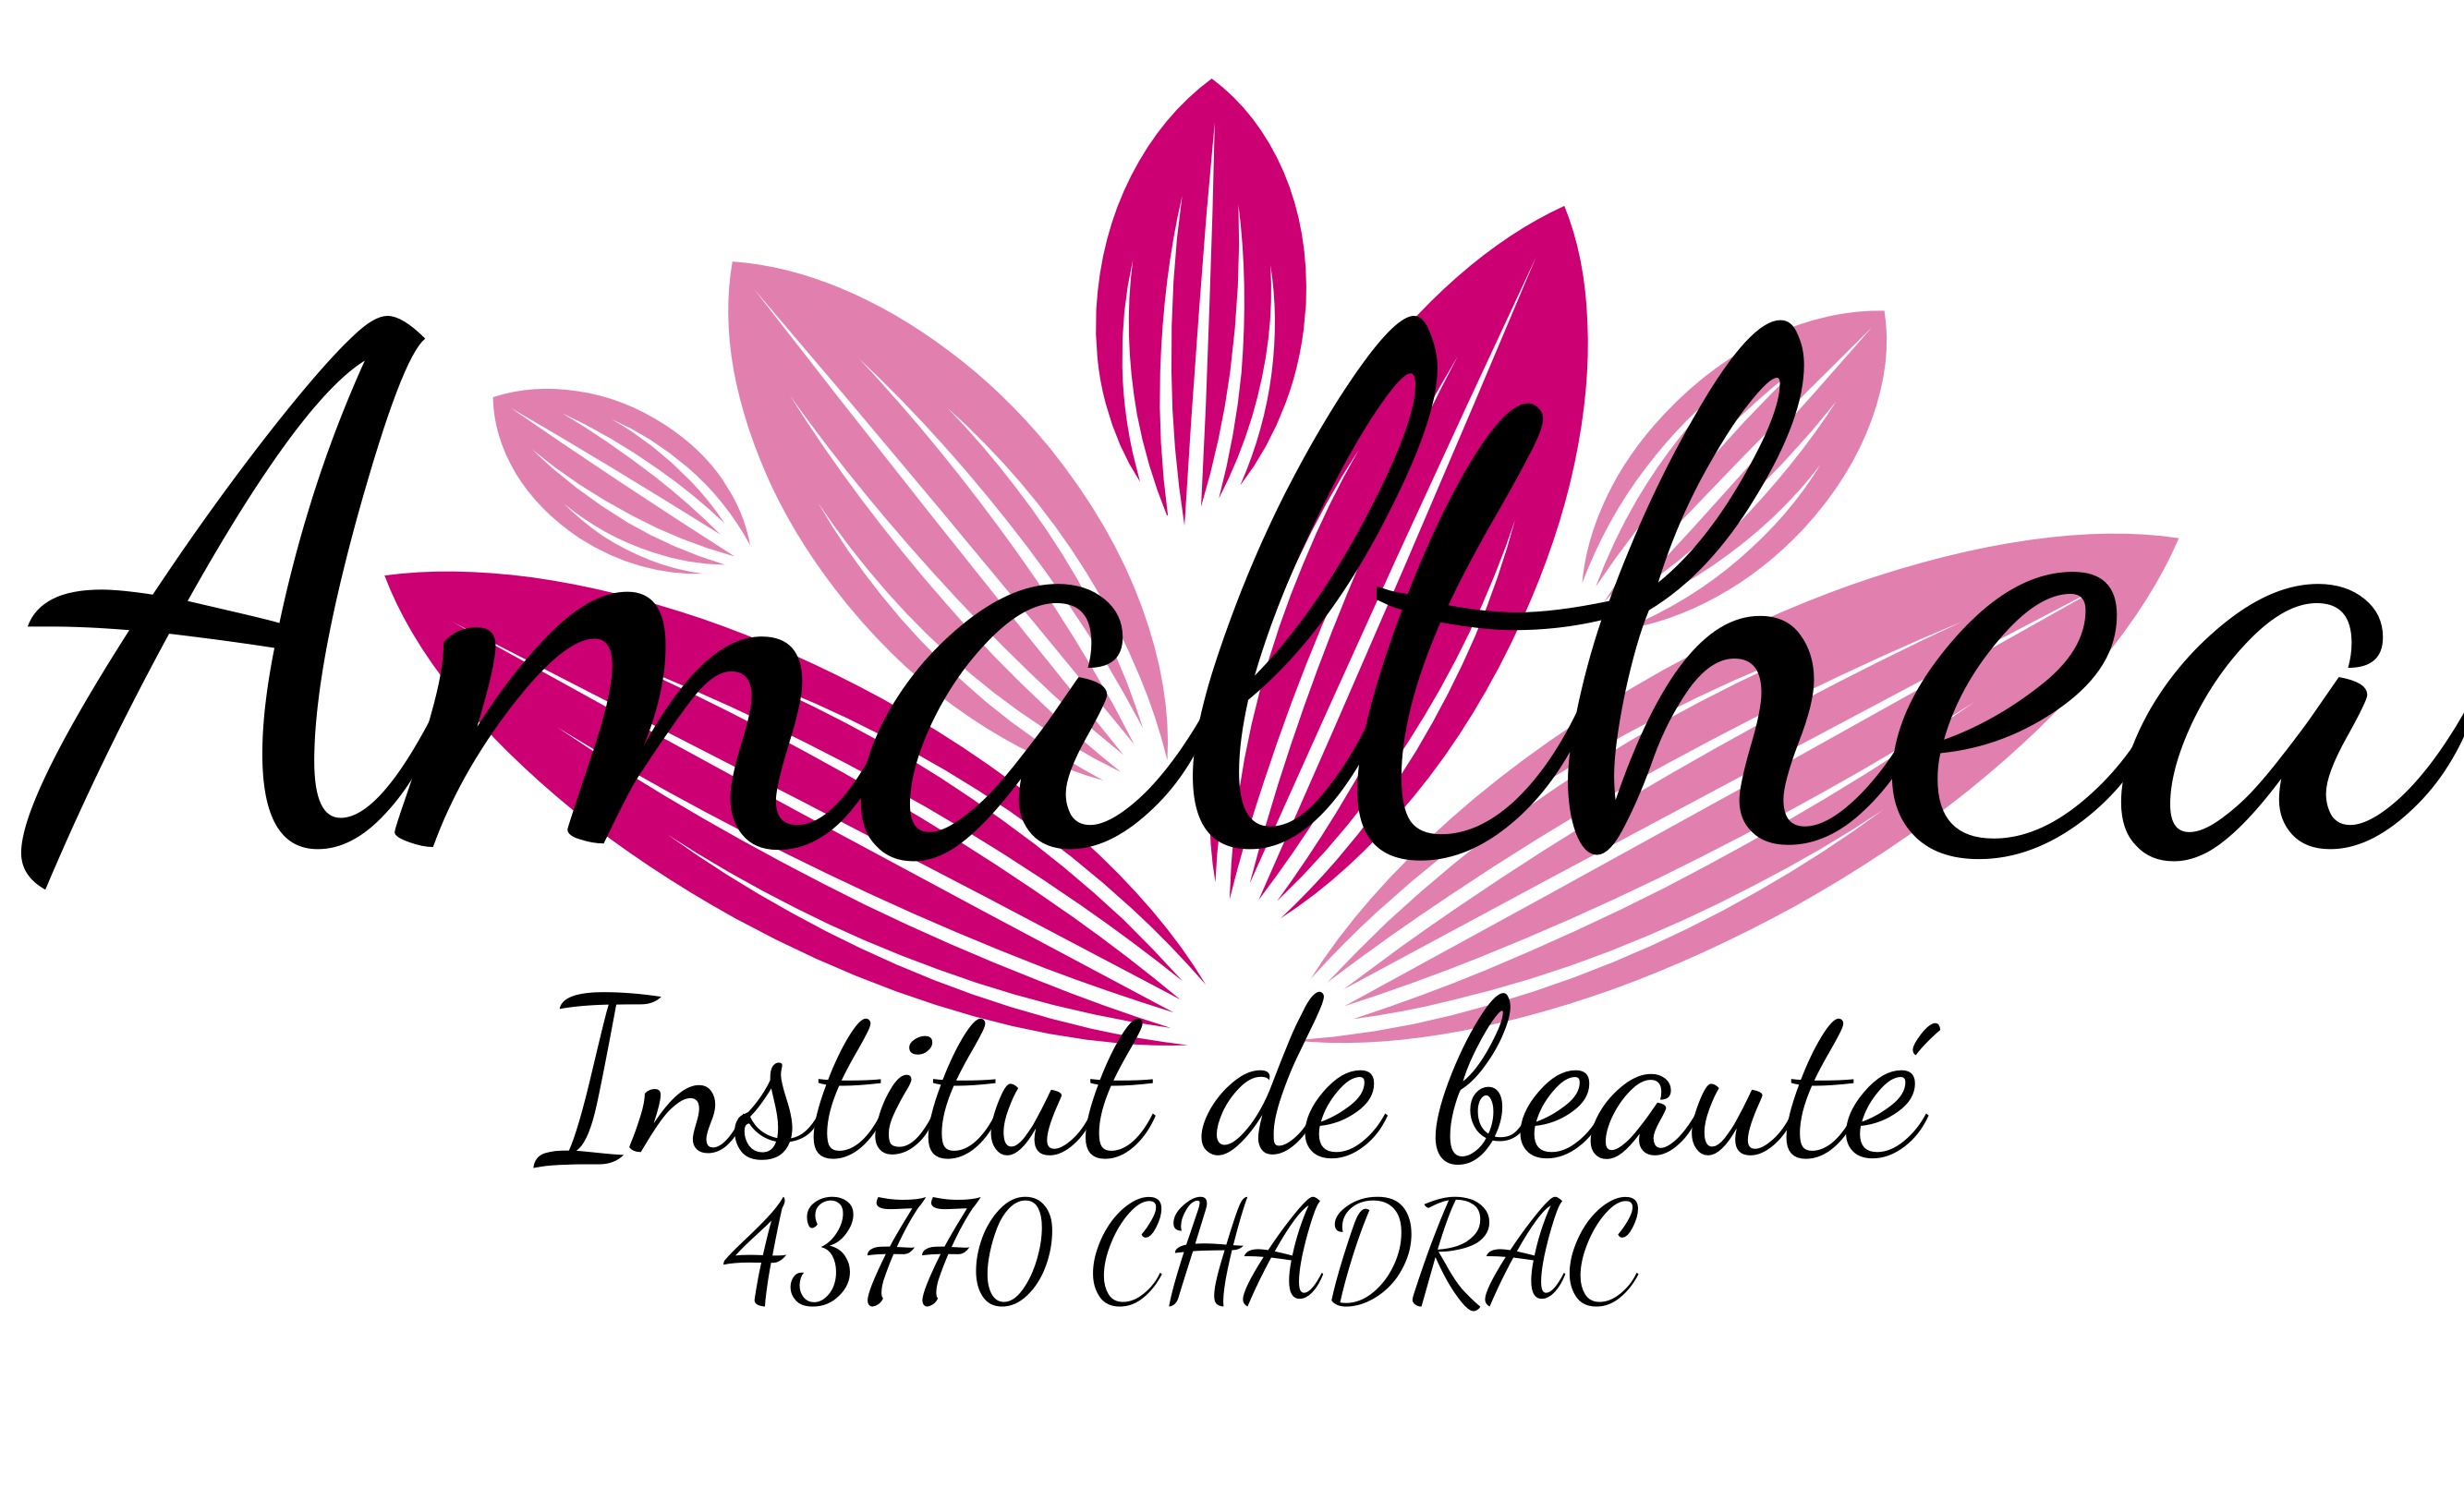 Logo Amalthea